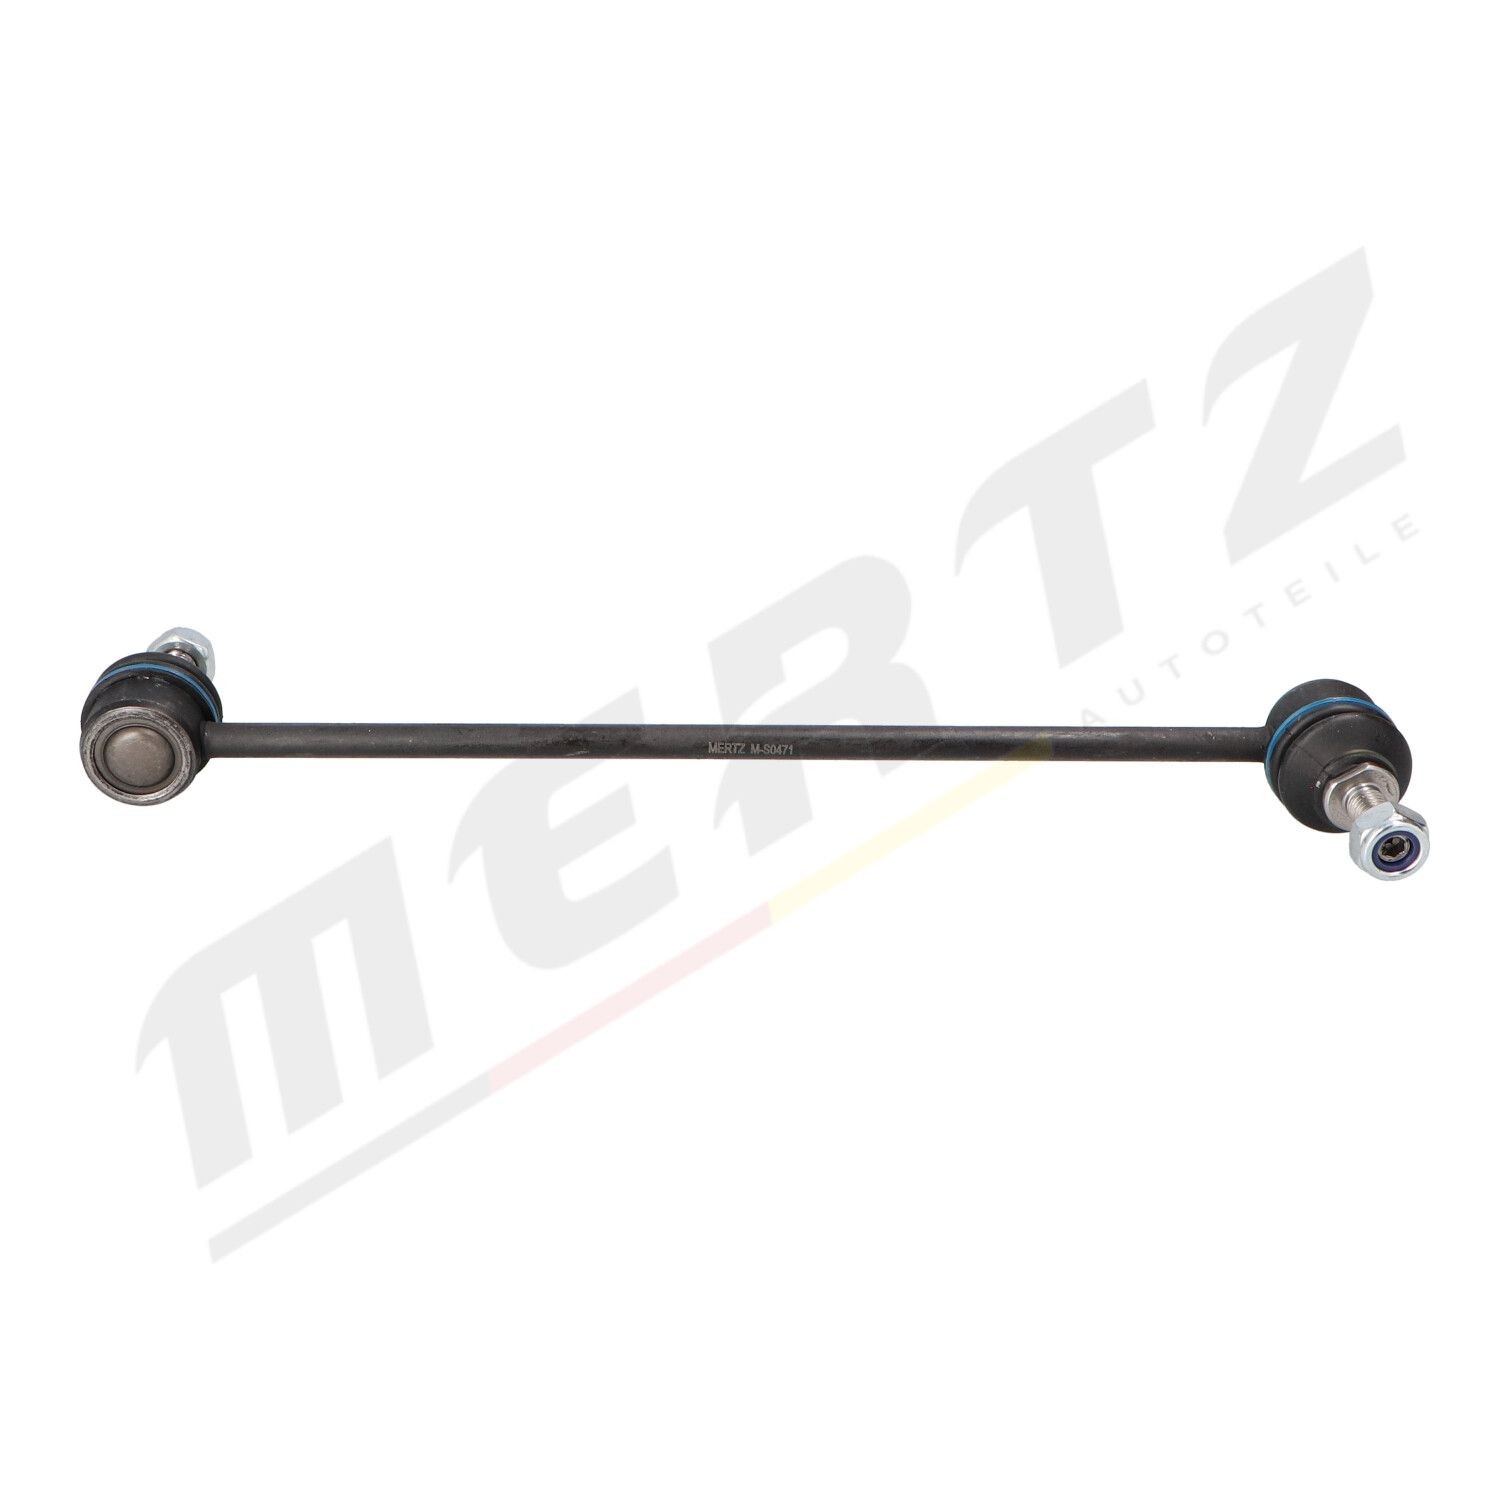 Original MERTZ Sway bar link M-S0471 for ALFA ROMEO 166